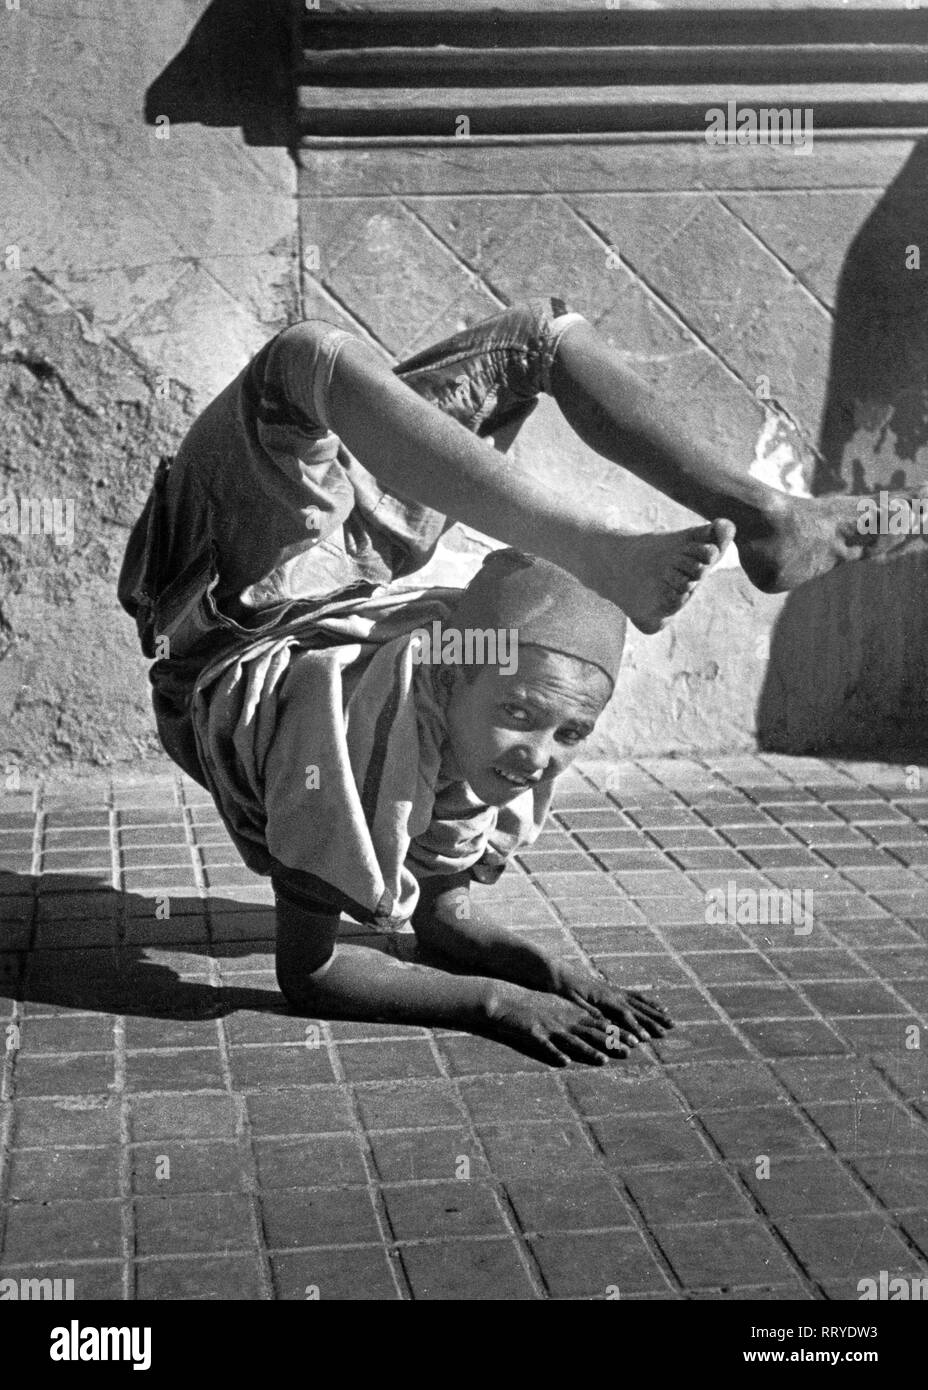 Marocco - Junge bei artistischer Vorführung in Tetuan, Marokko, ca. 1954 Stock Photo